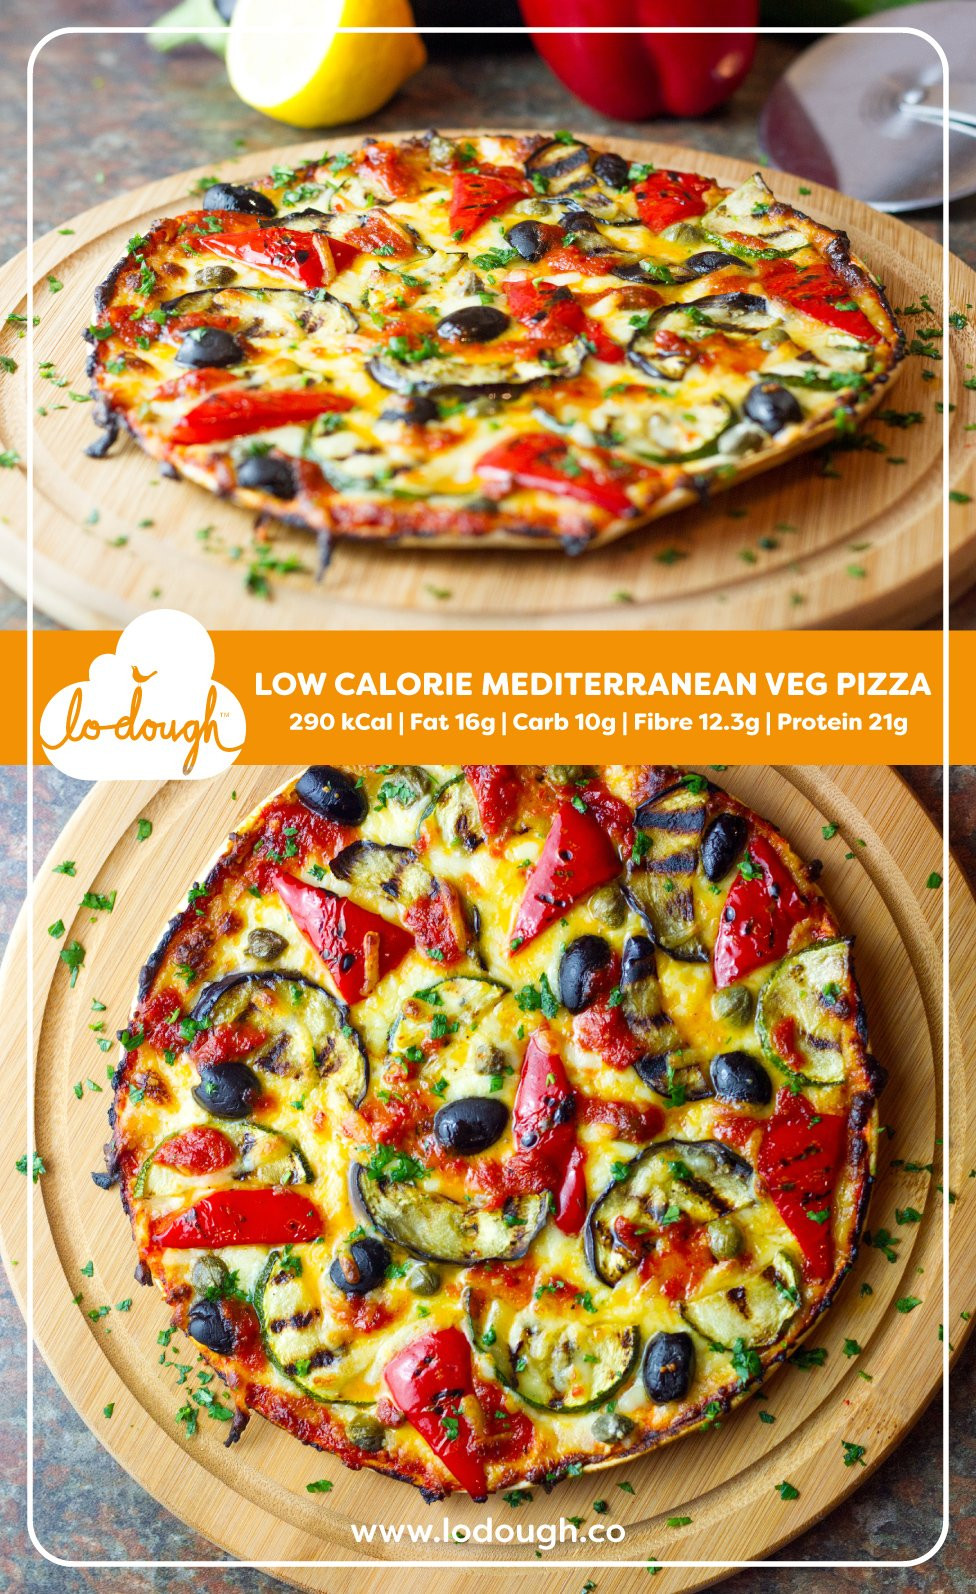 Low Calorie Pizza Dough Luxury Low Calorie Mediterranean Veg Pizza Lo Dough Of Low Calorie Pizza Dough 